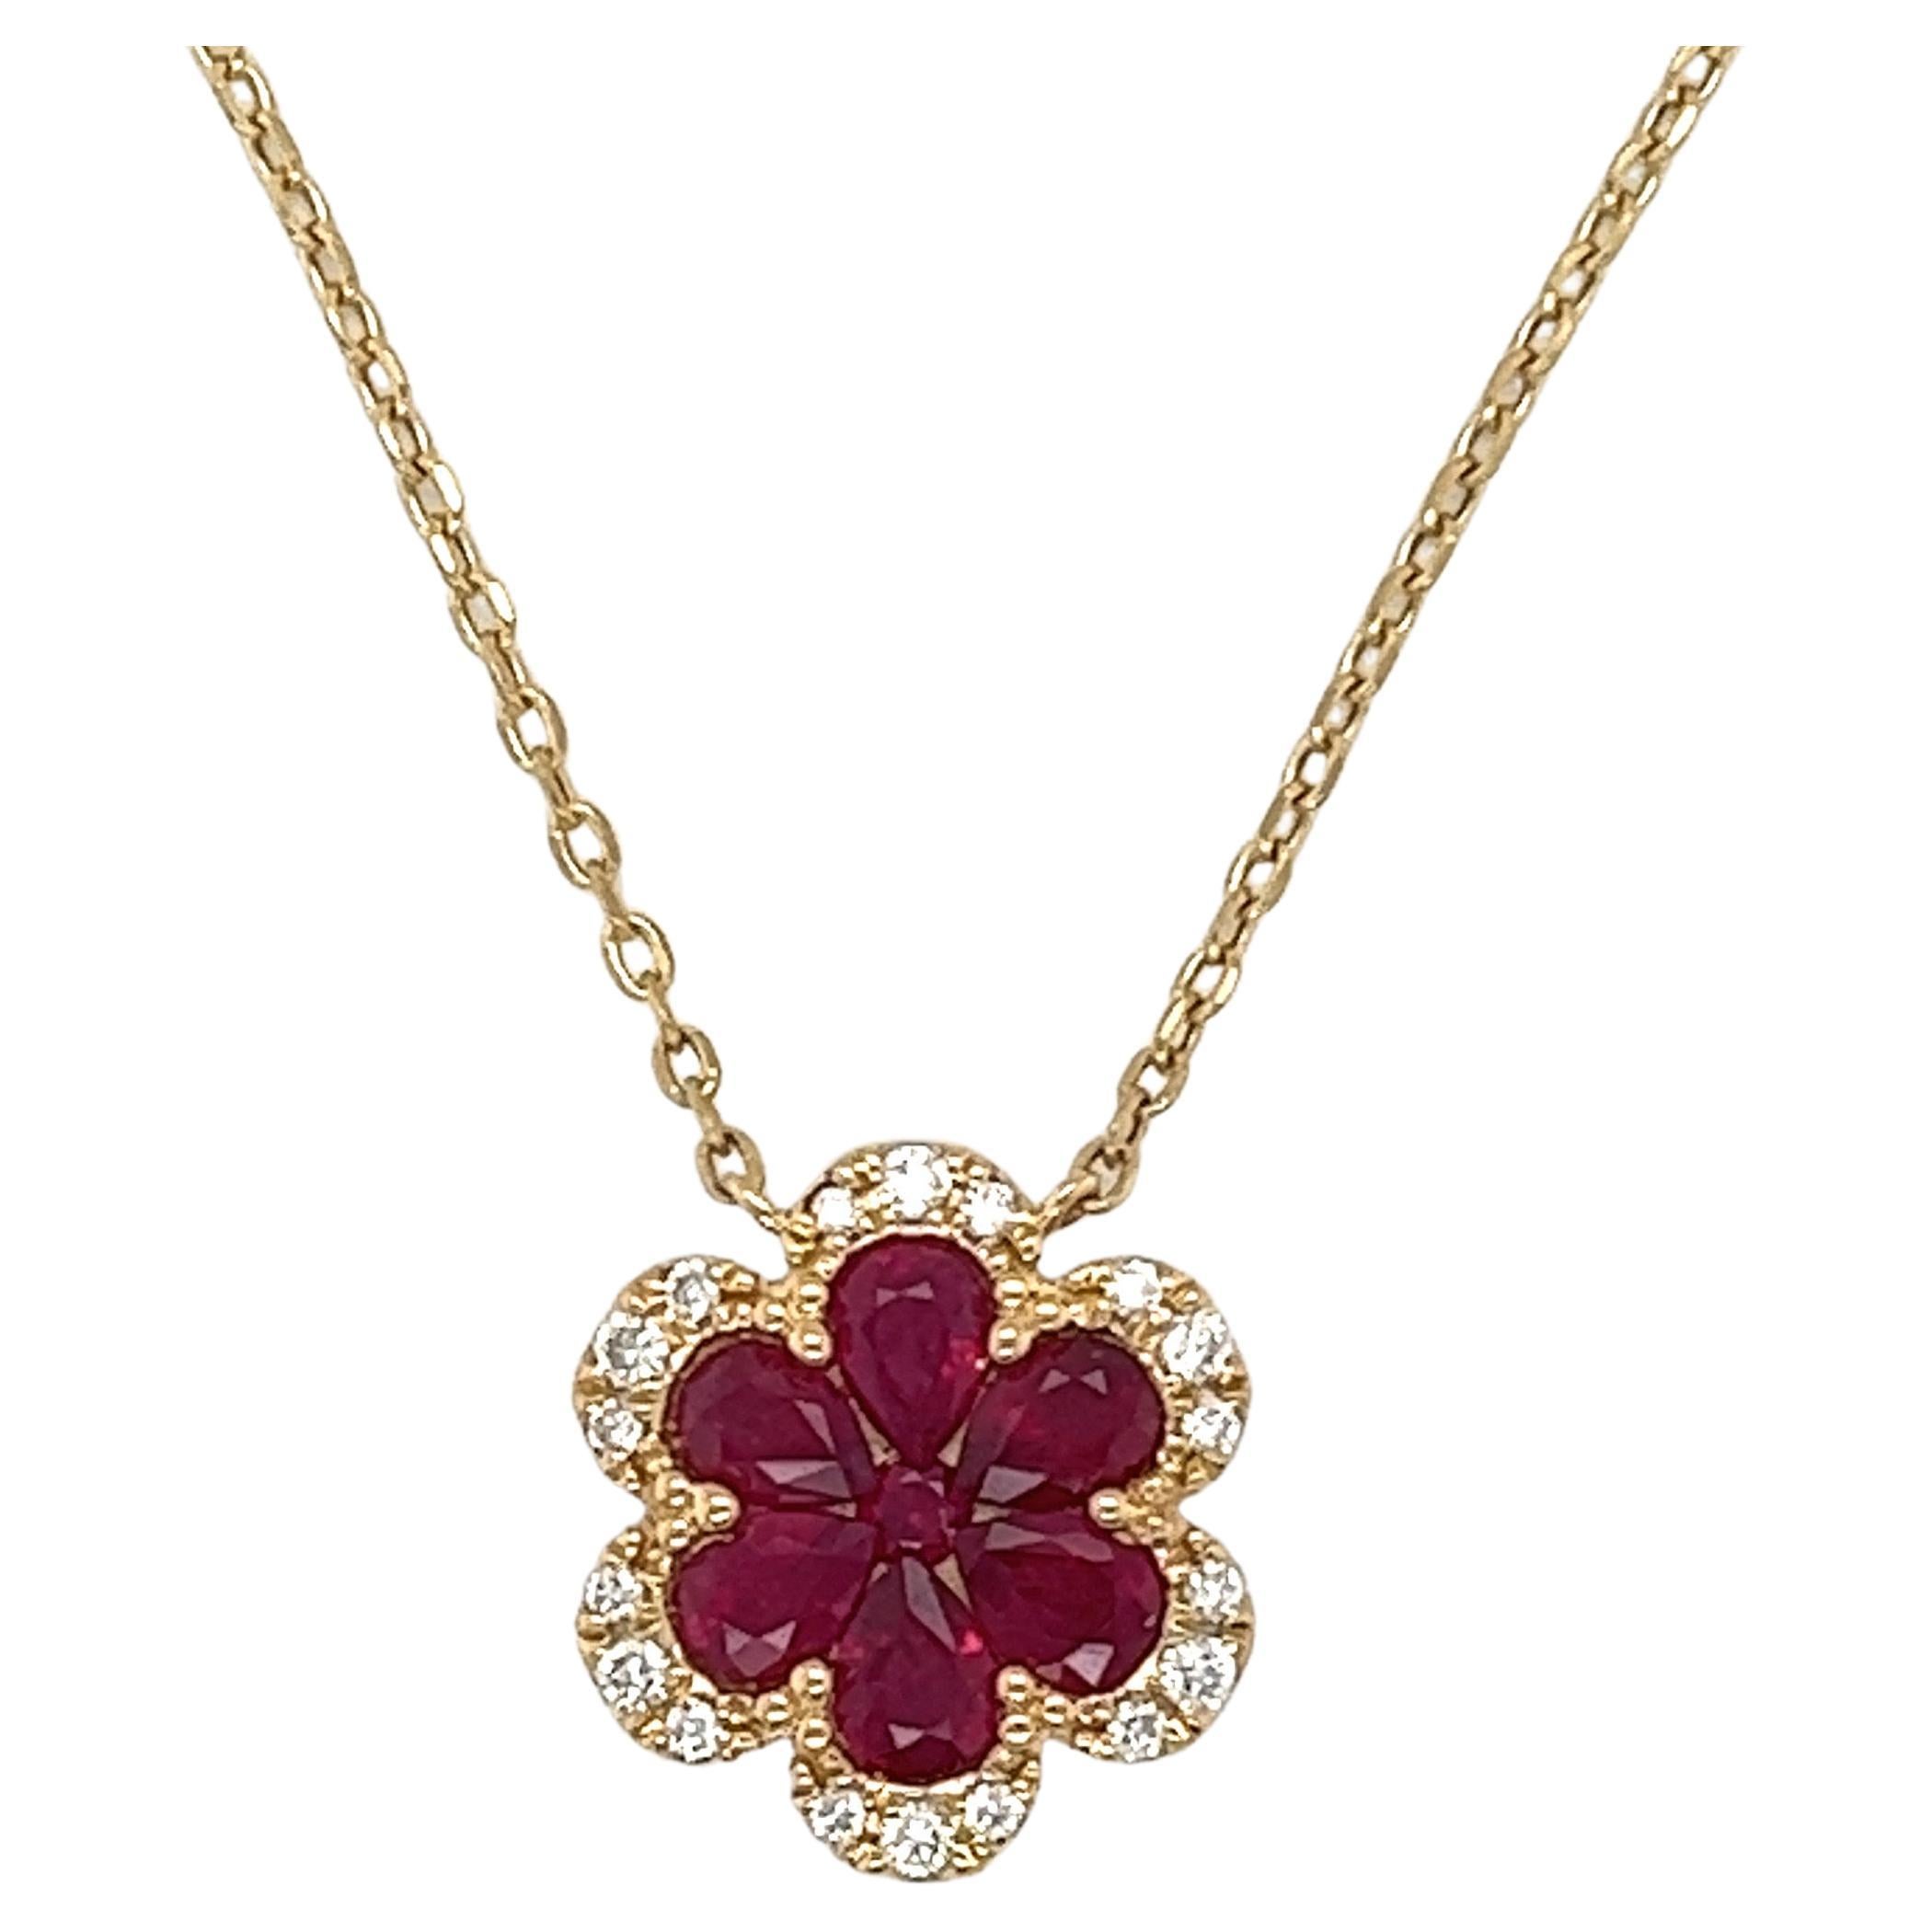 Halskette mit Rubin und Diamanten aus 18 Karat Gelbgold